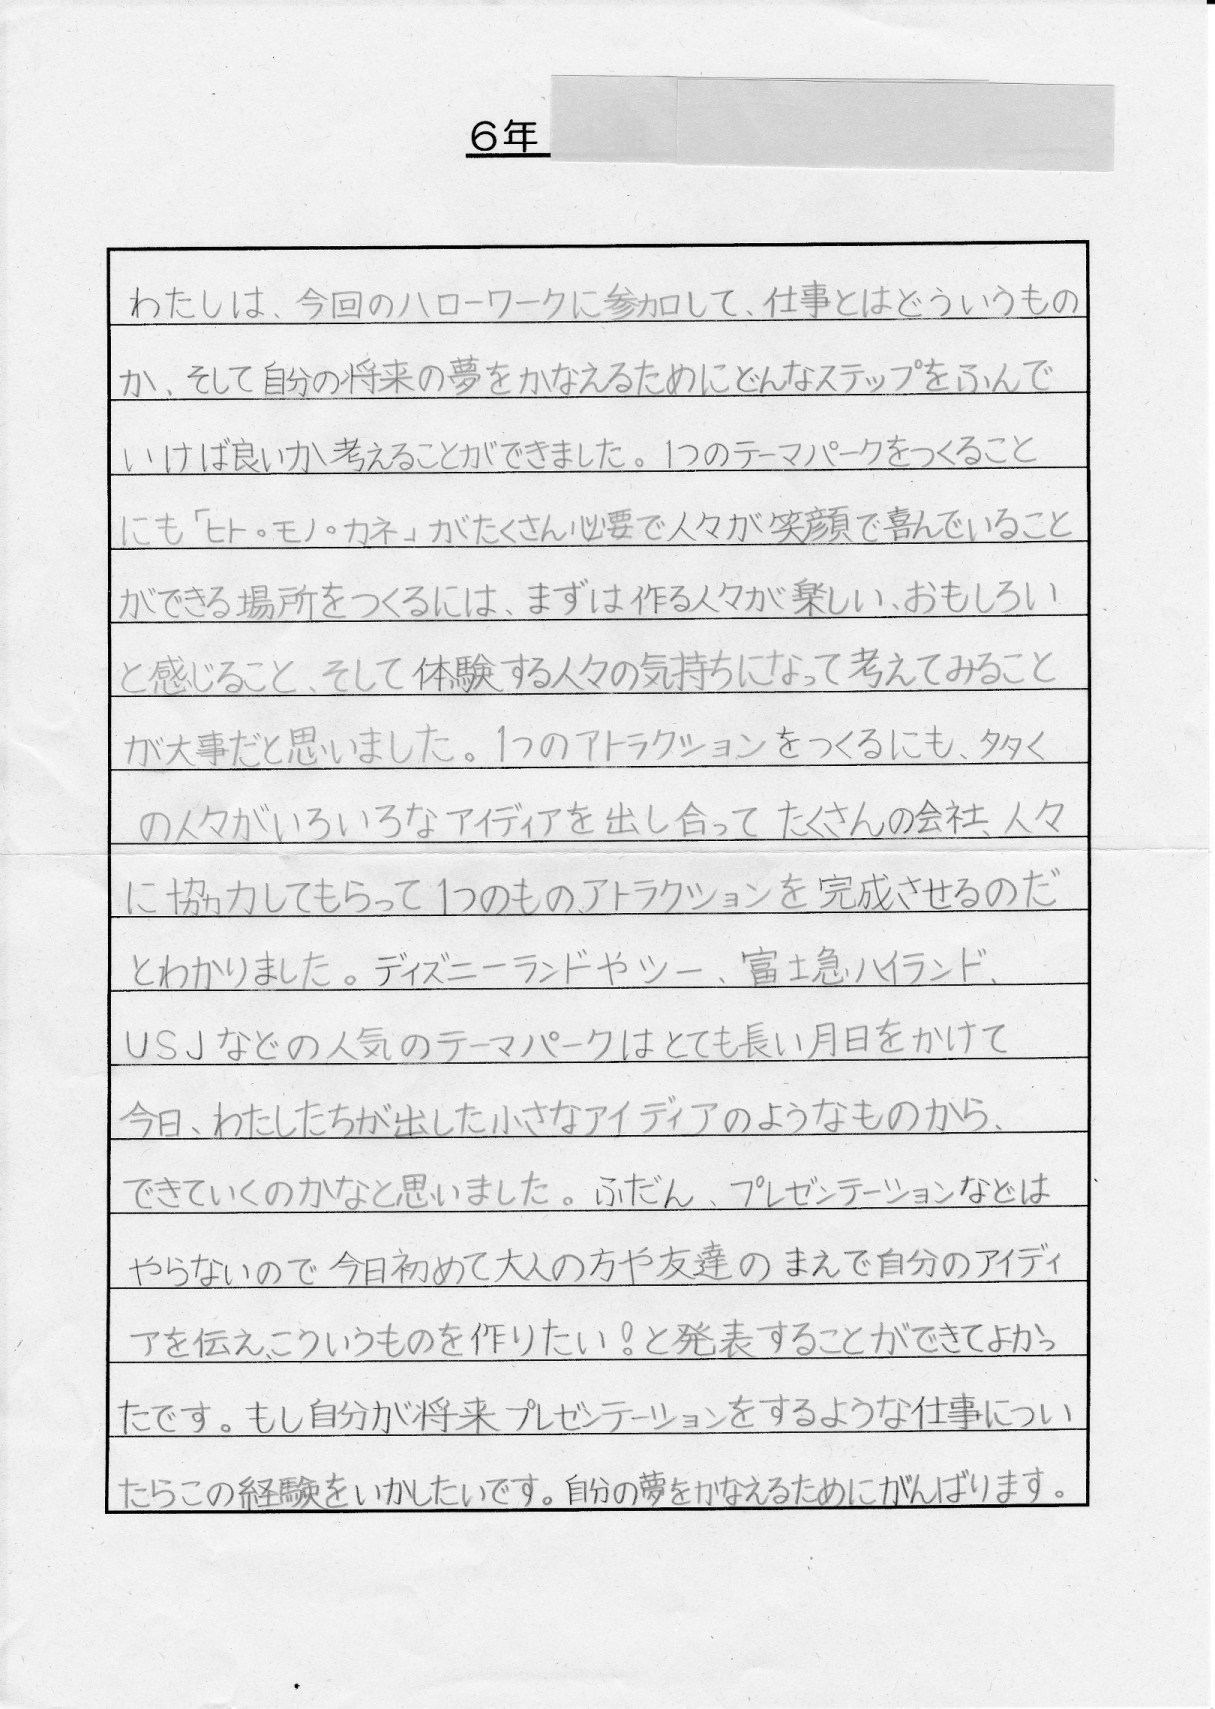 浦安市立日の出南小学校おやじの会 感想文発表 ハローワーク２０１３